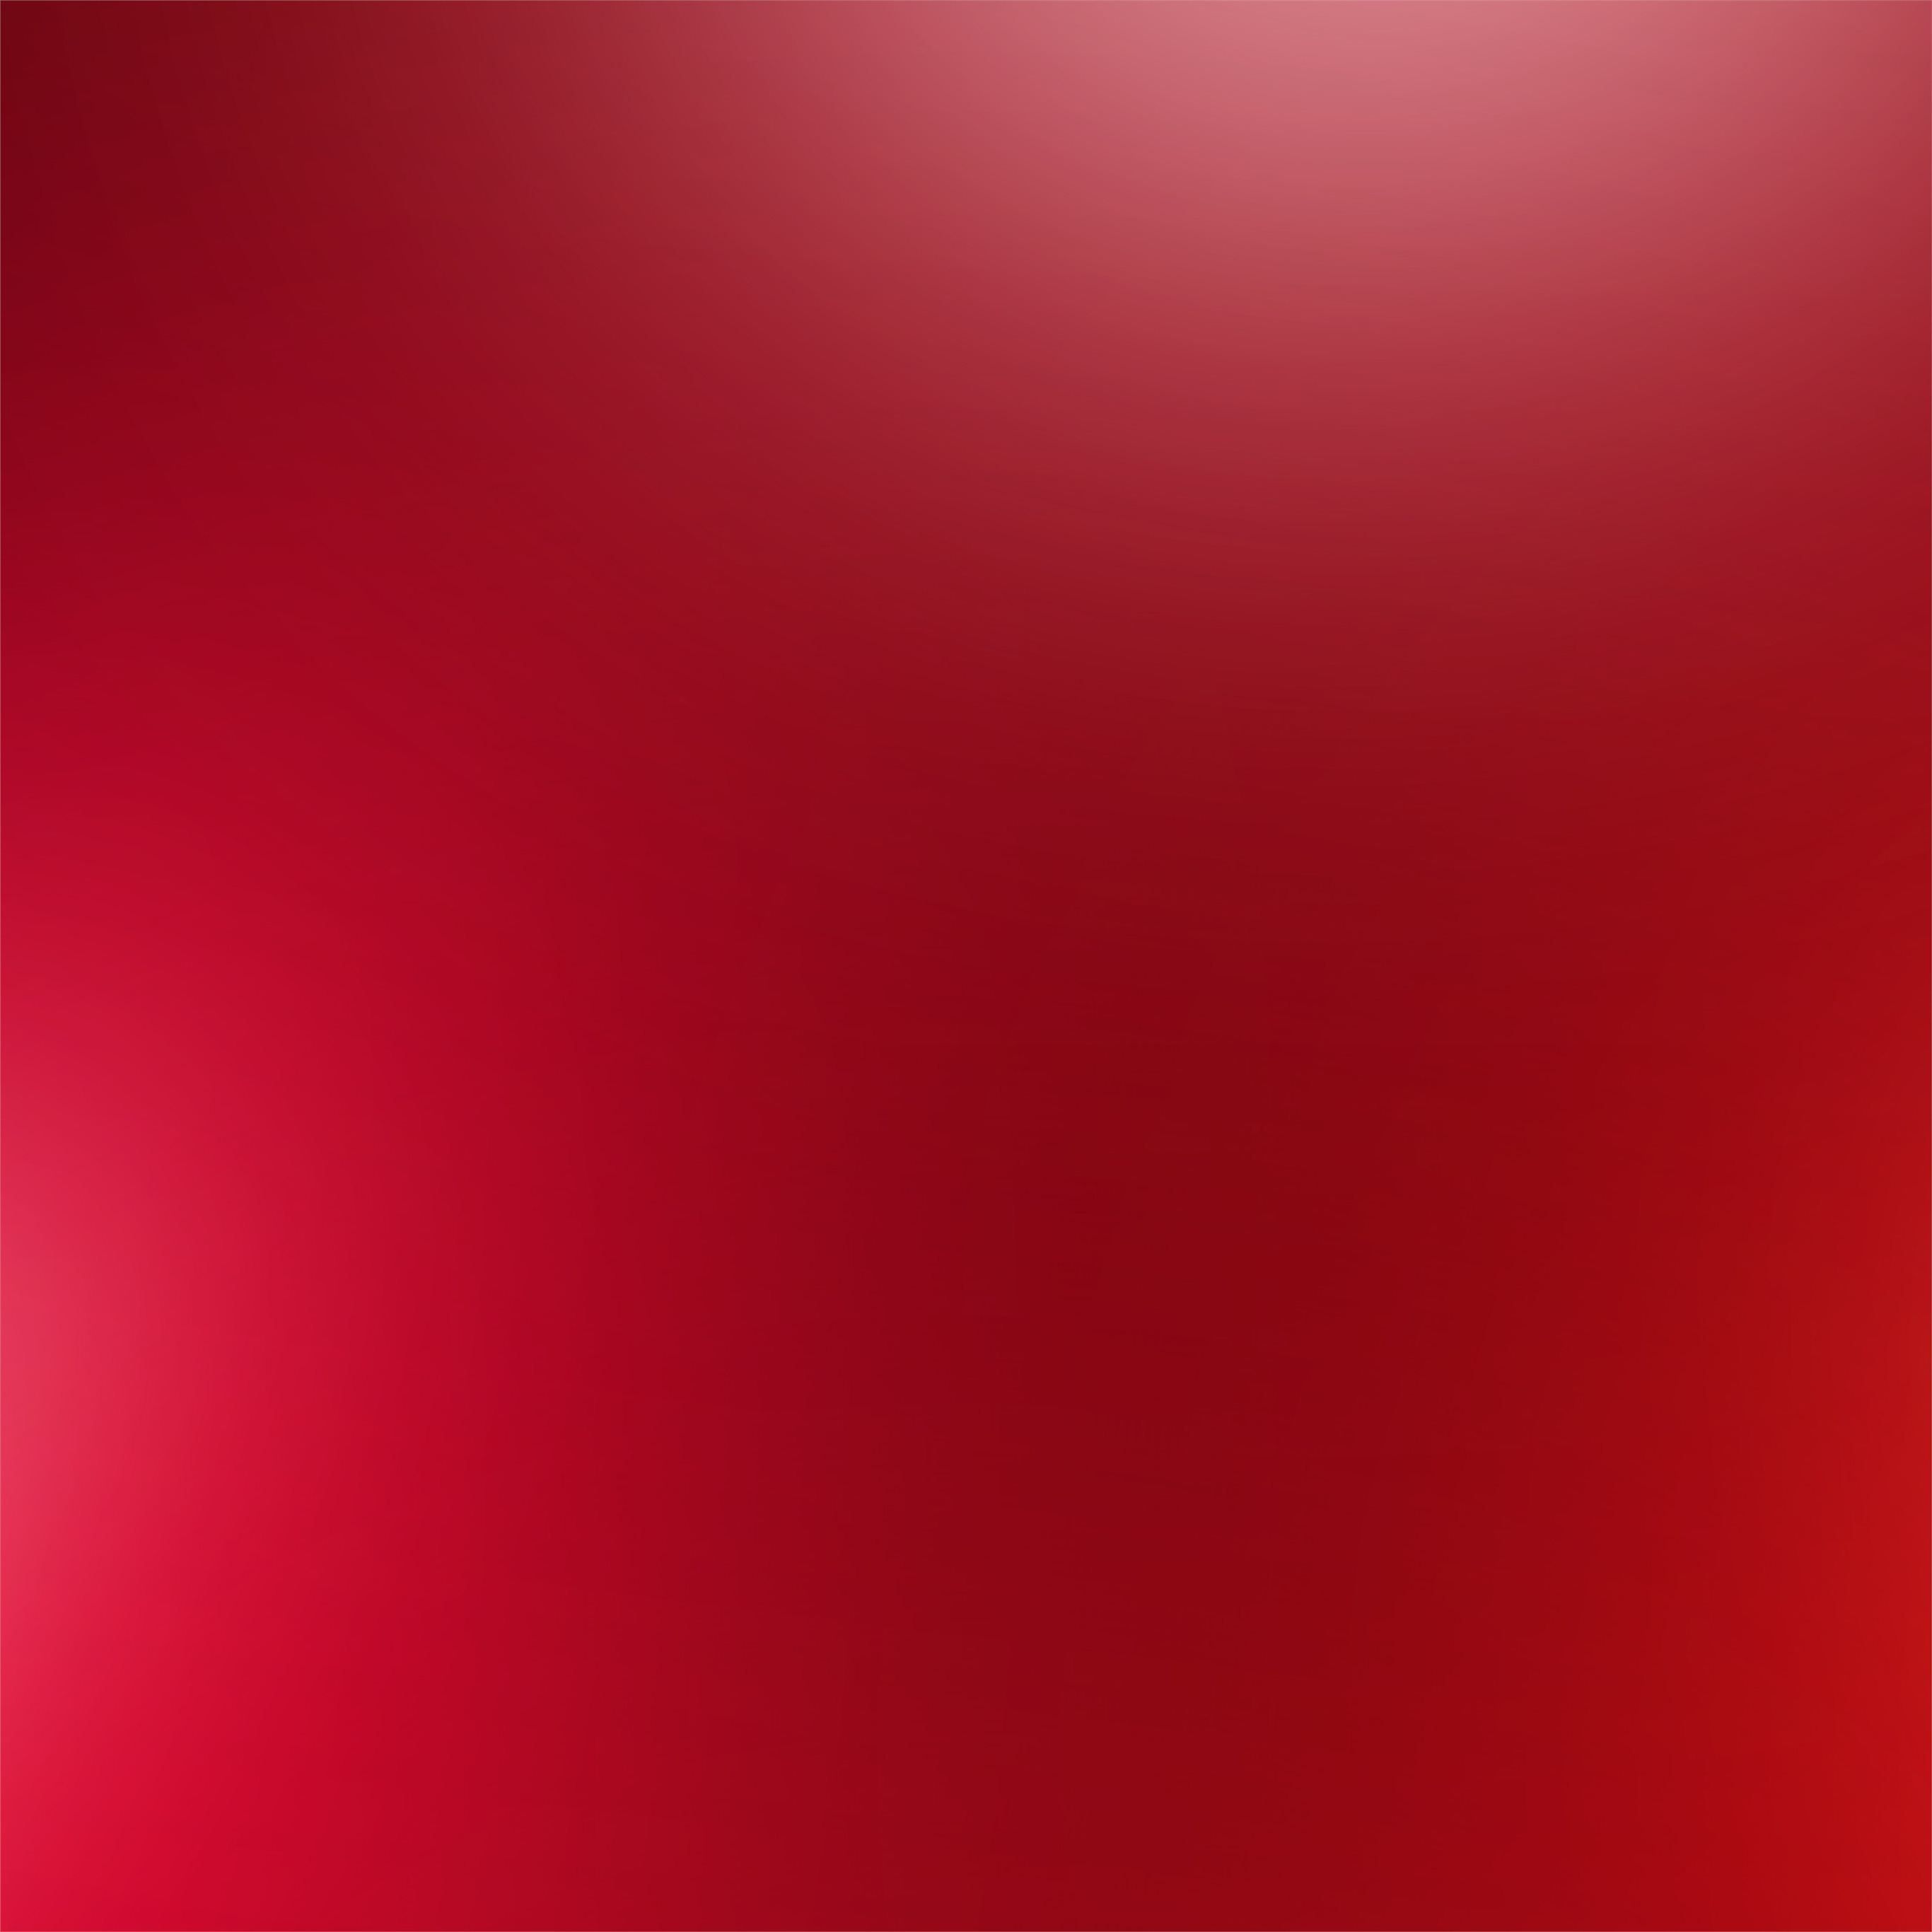 red gradient minimal 4k iPad Pro Wallpaper Free Download